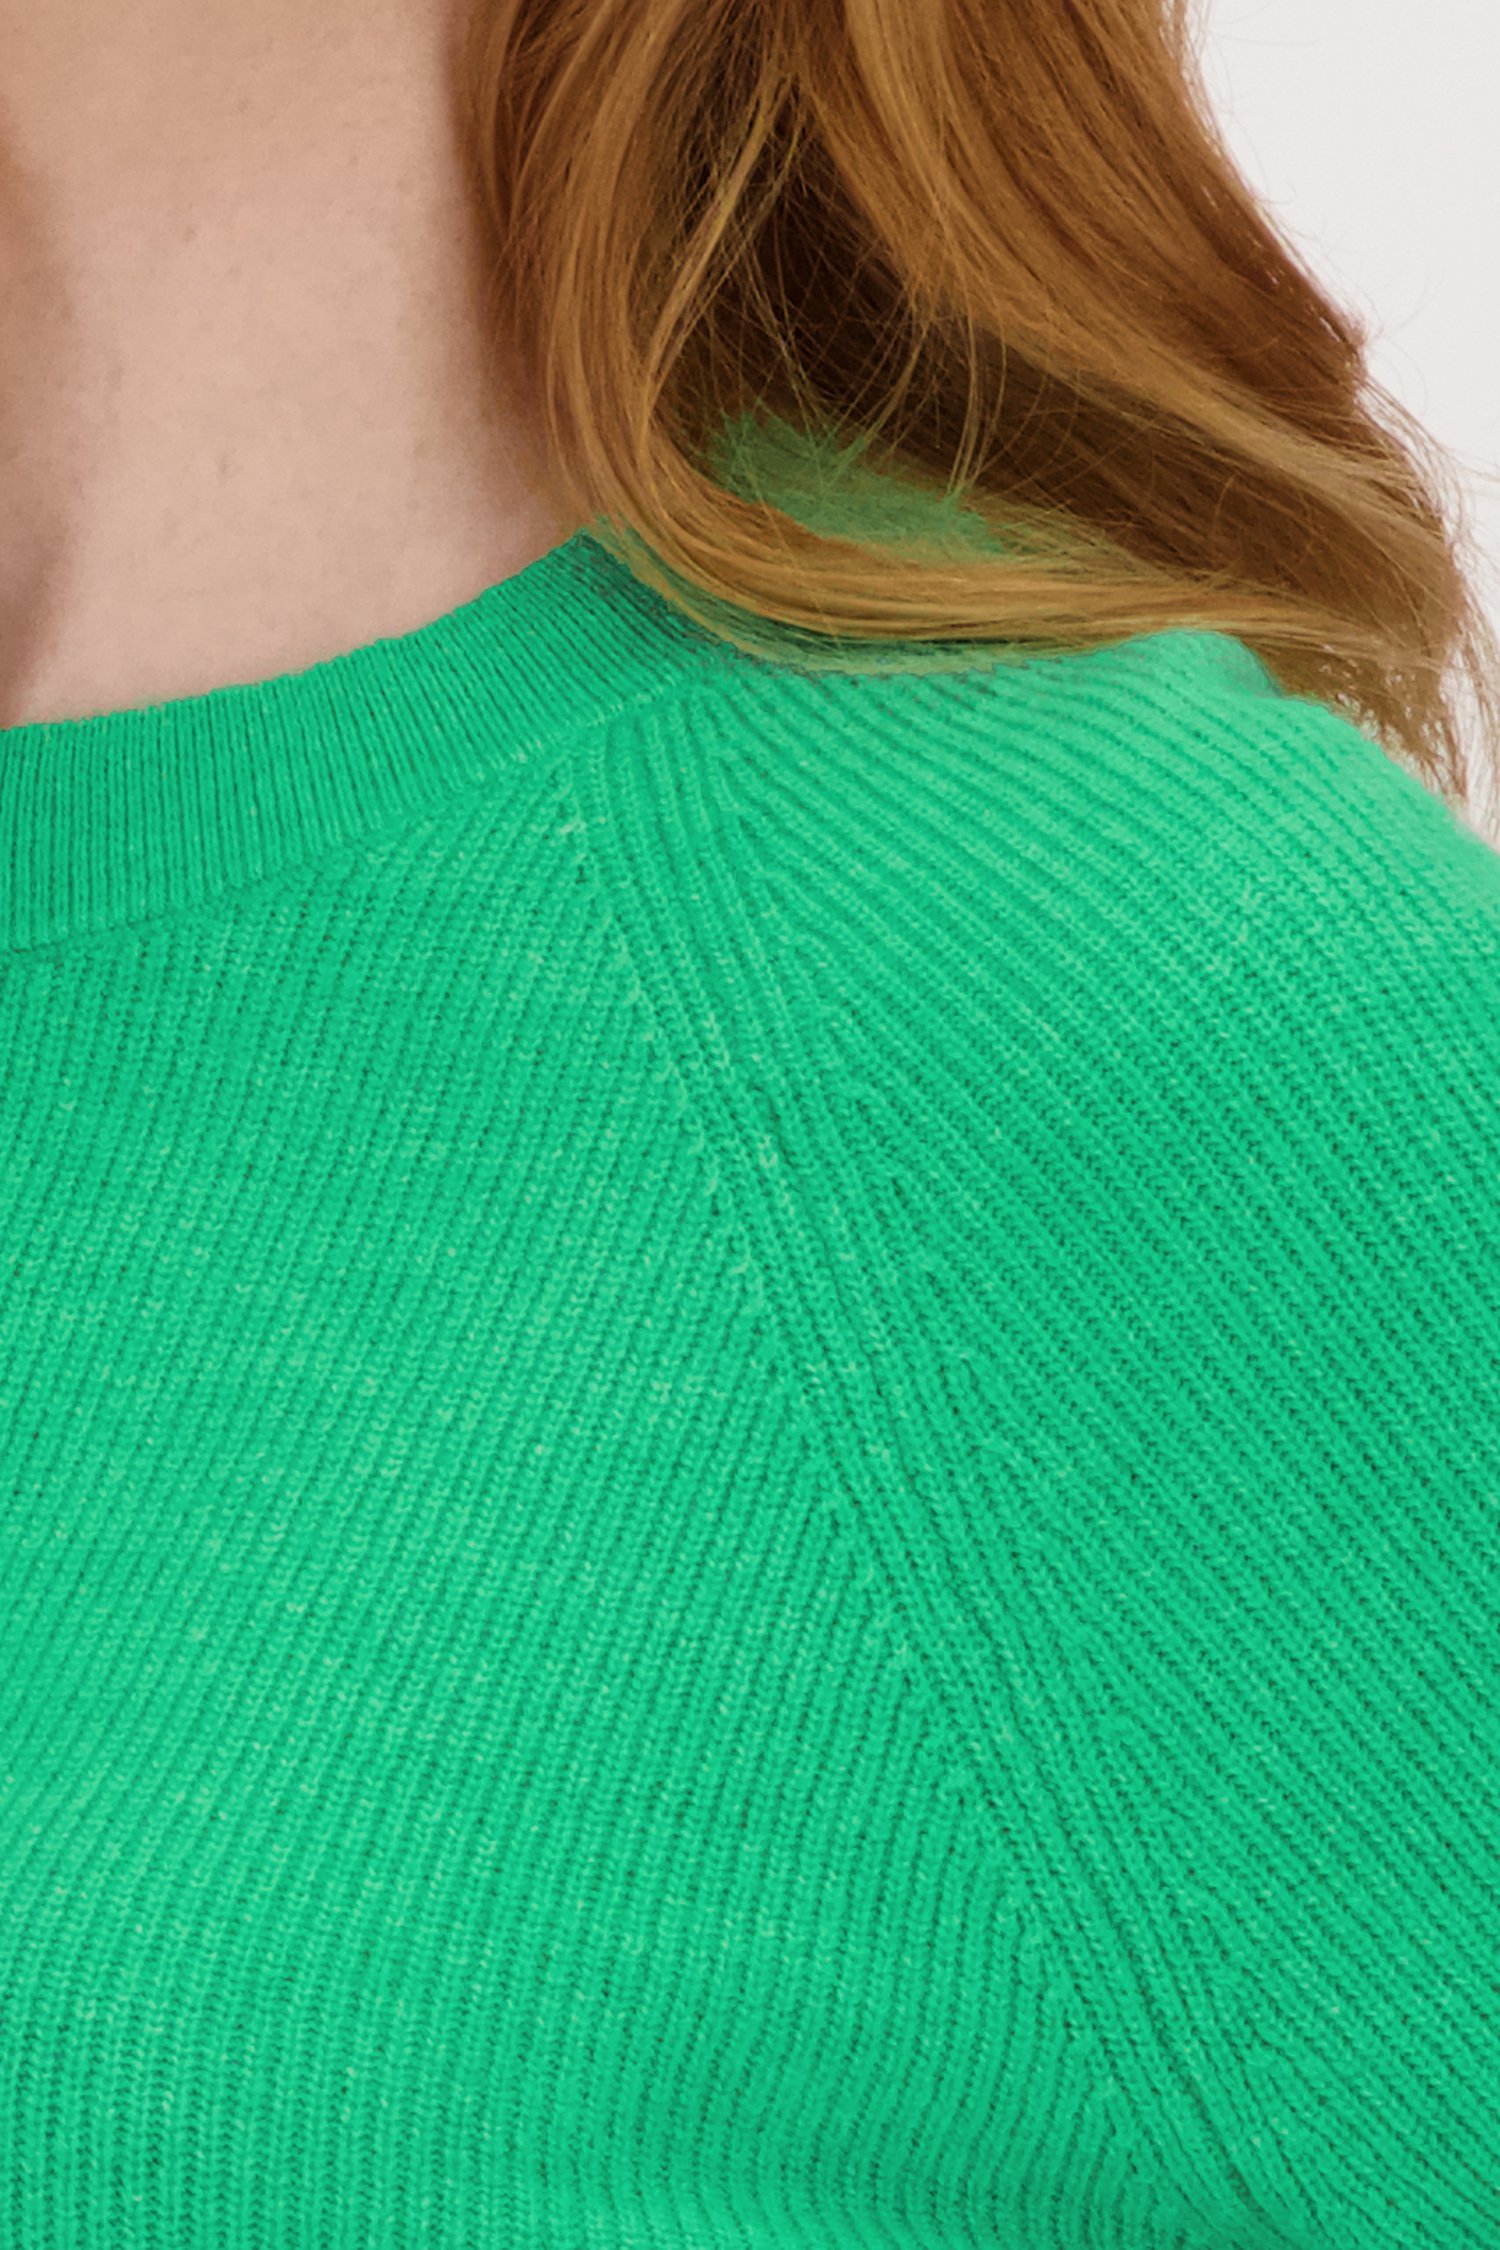 Groene trui met halflange mouwen van Libelle voor Dames